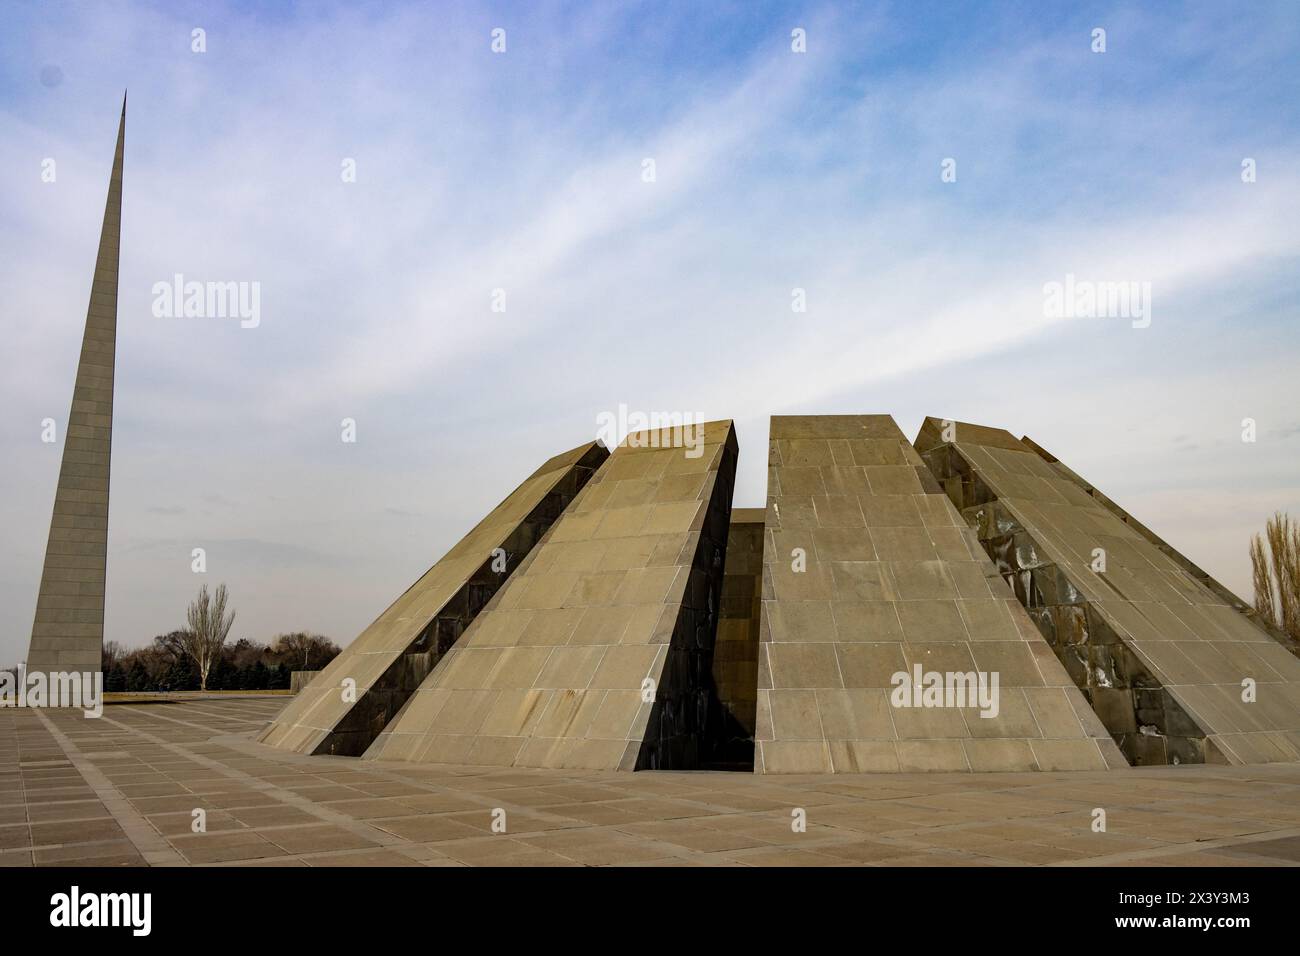 Armenische Völkermord-Gedenkstätte. Es ist ein Denkmal für den Völkermord an den Armeniern, der zwischen 1915 und 1923 vom Osmanischen Reich begangen wurde Stockfoto